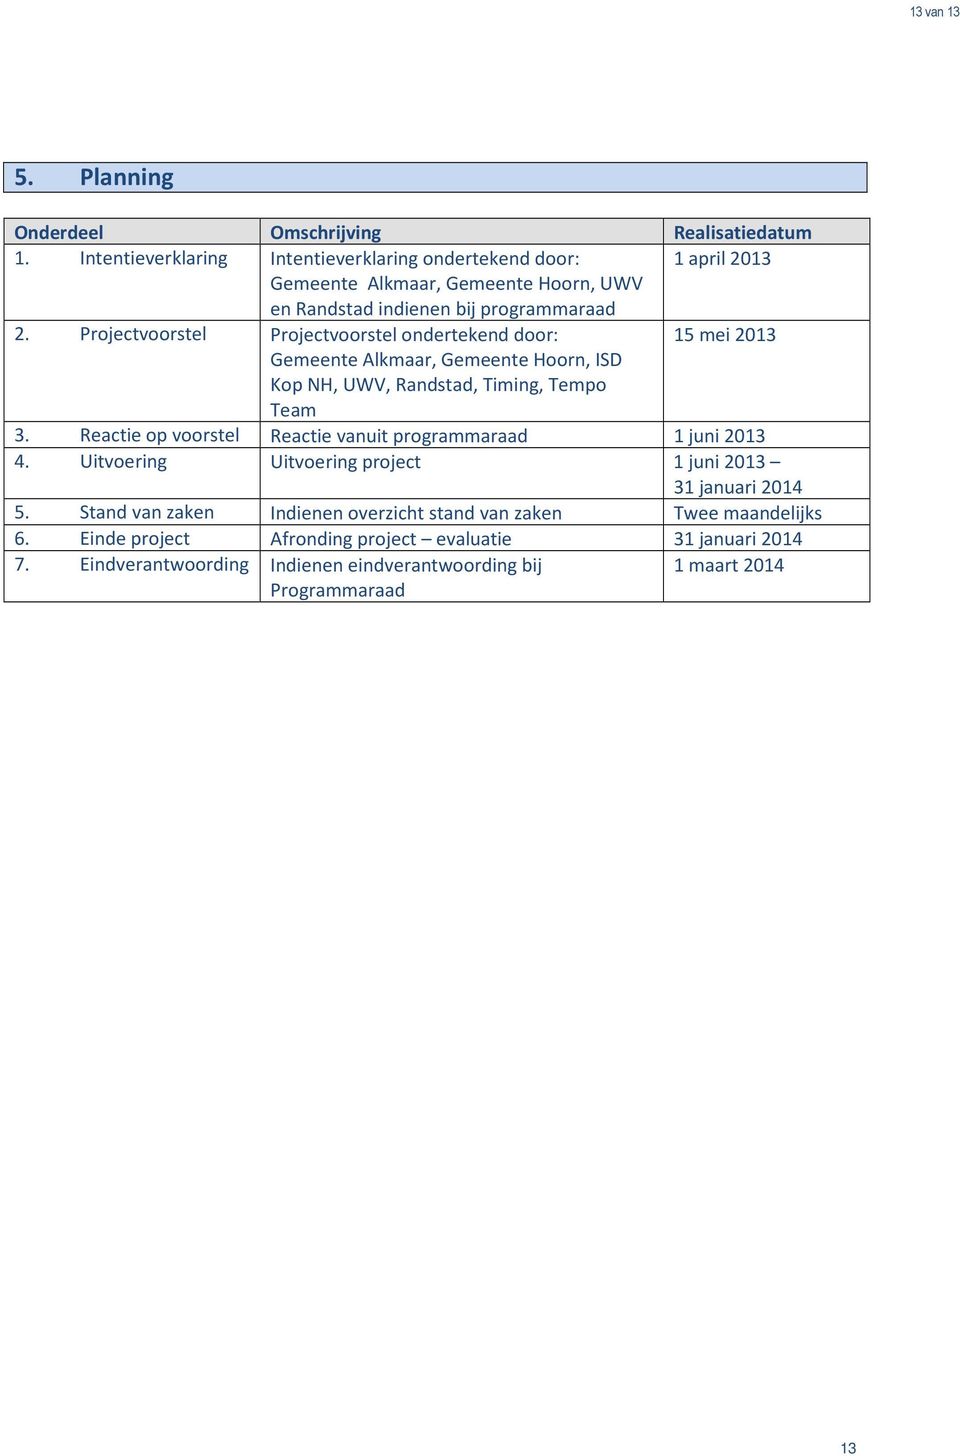 Projectvoorstel Projectvoorstel ondertekend door: 15 mei 2013 Gemeente Alkmaar, Gemeente Hoorn, ISD Kop NH, UWV, Randstad, Timing, Tempo Team 3.